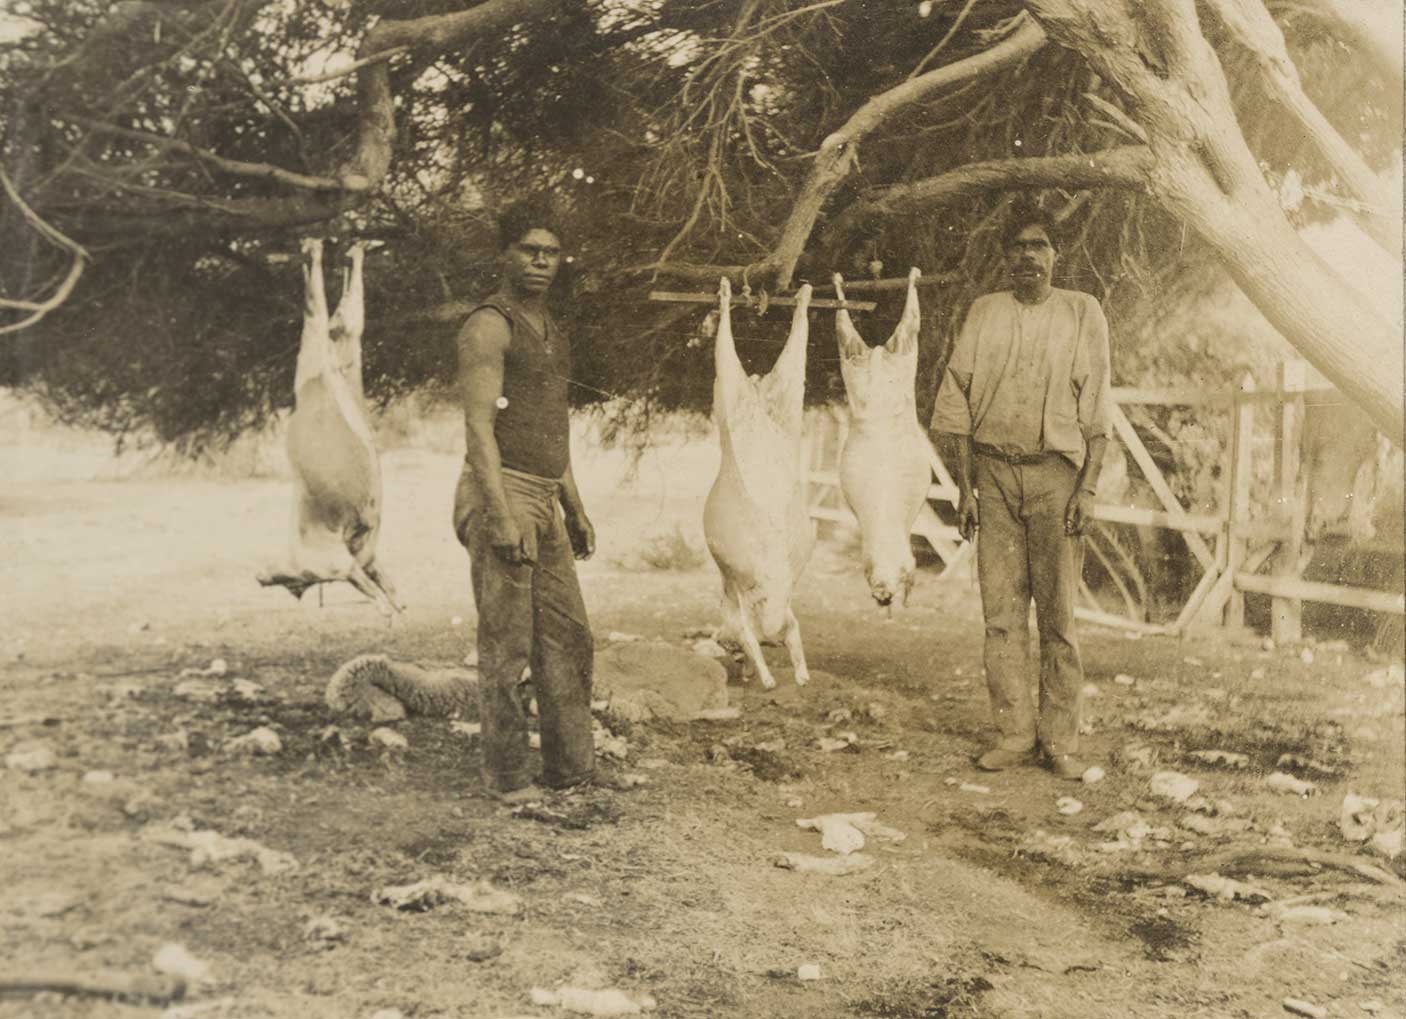 Two Aboriginal men preparing sheep on Wadjemup, c. 1915